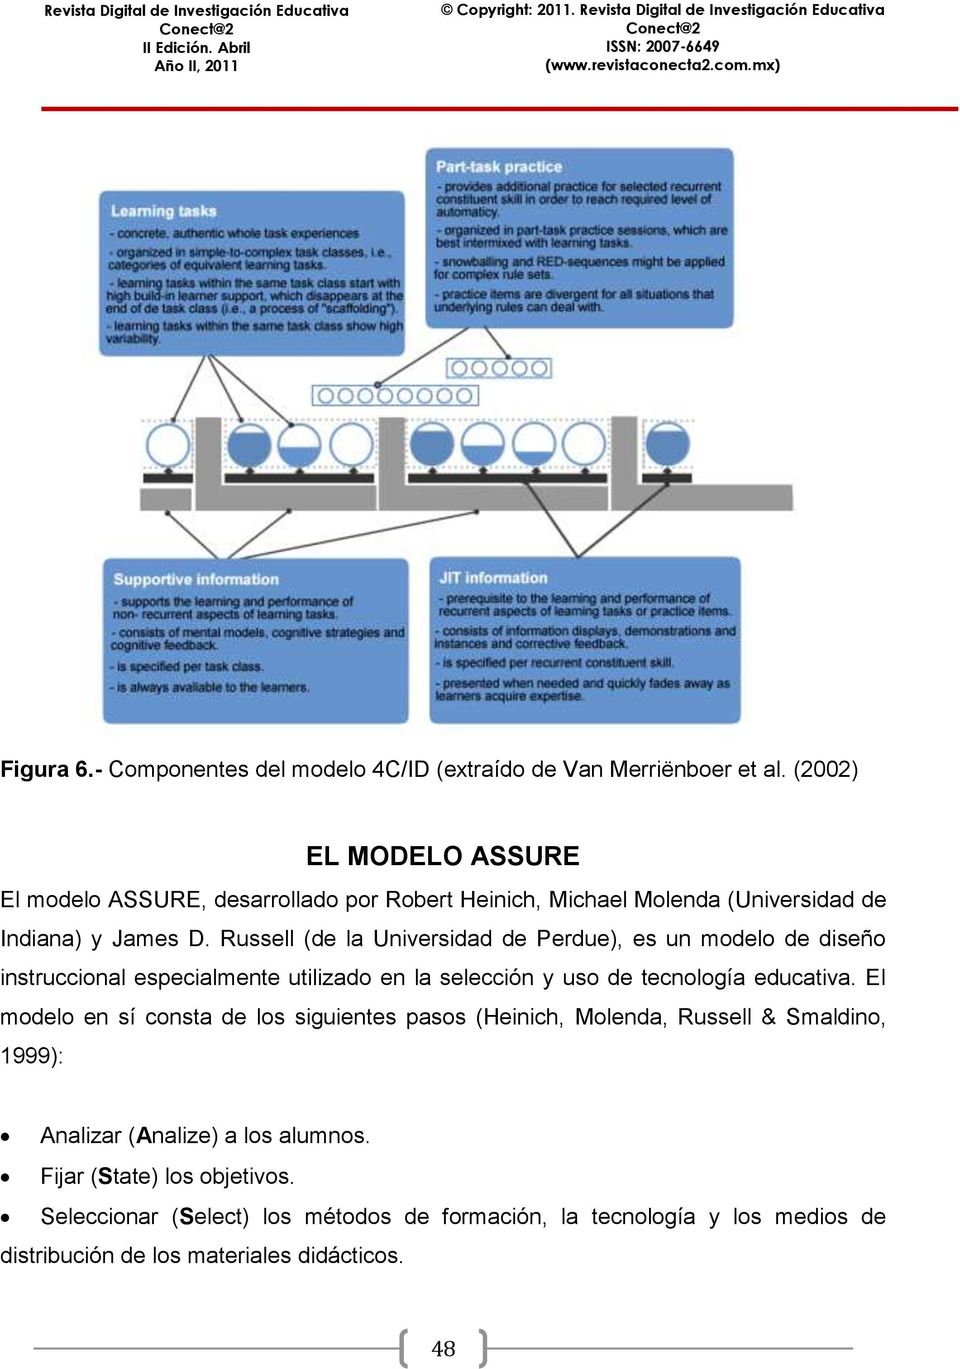 MODELOS DE DISEÑO INSTRUCCIONAL UTILIZADOS EN AMBIENTES TELEFORMATIVOS -  PDF Free Download